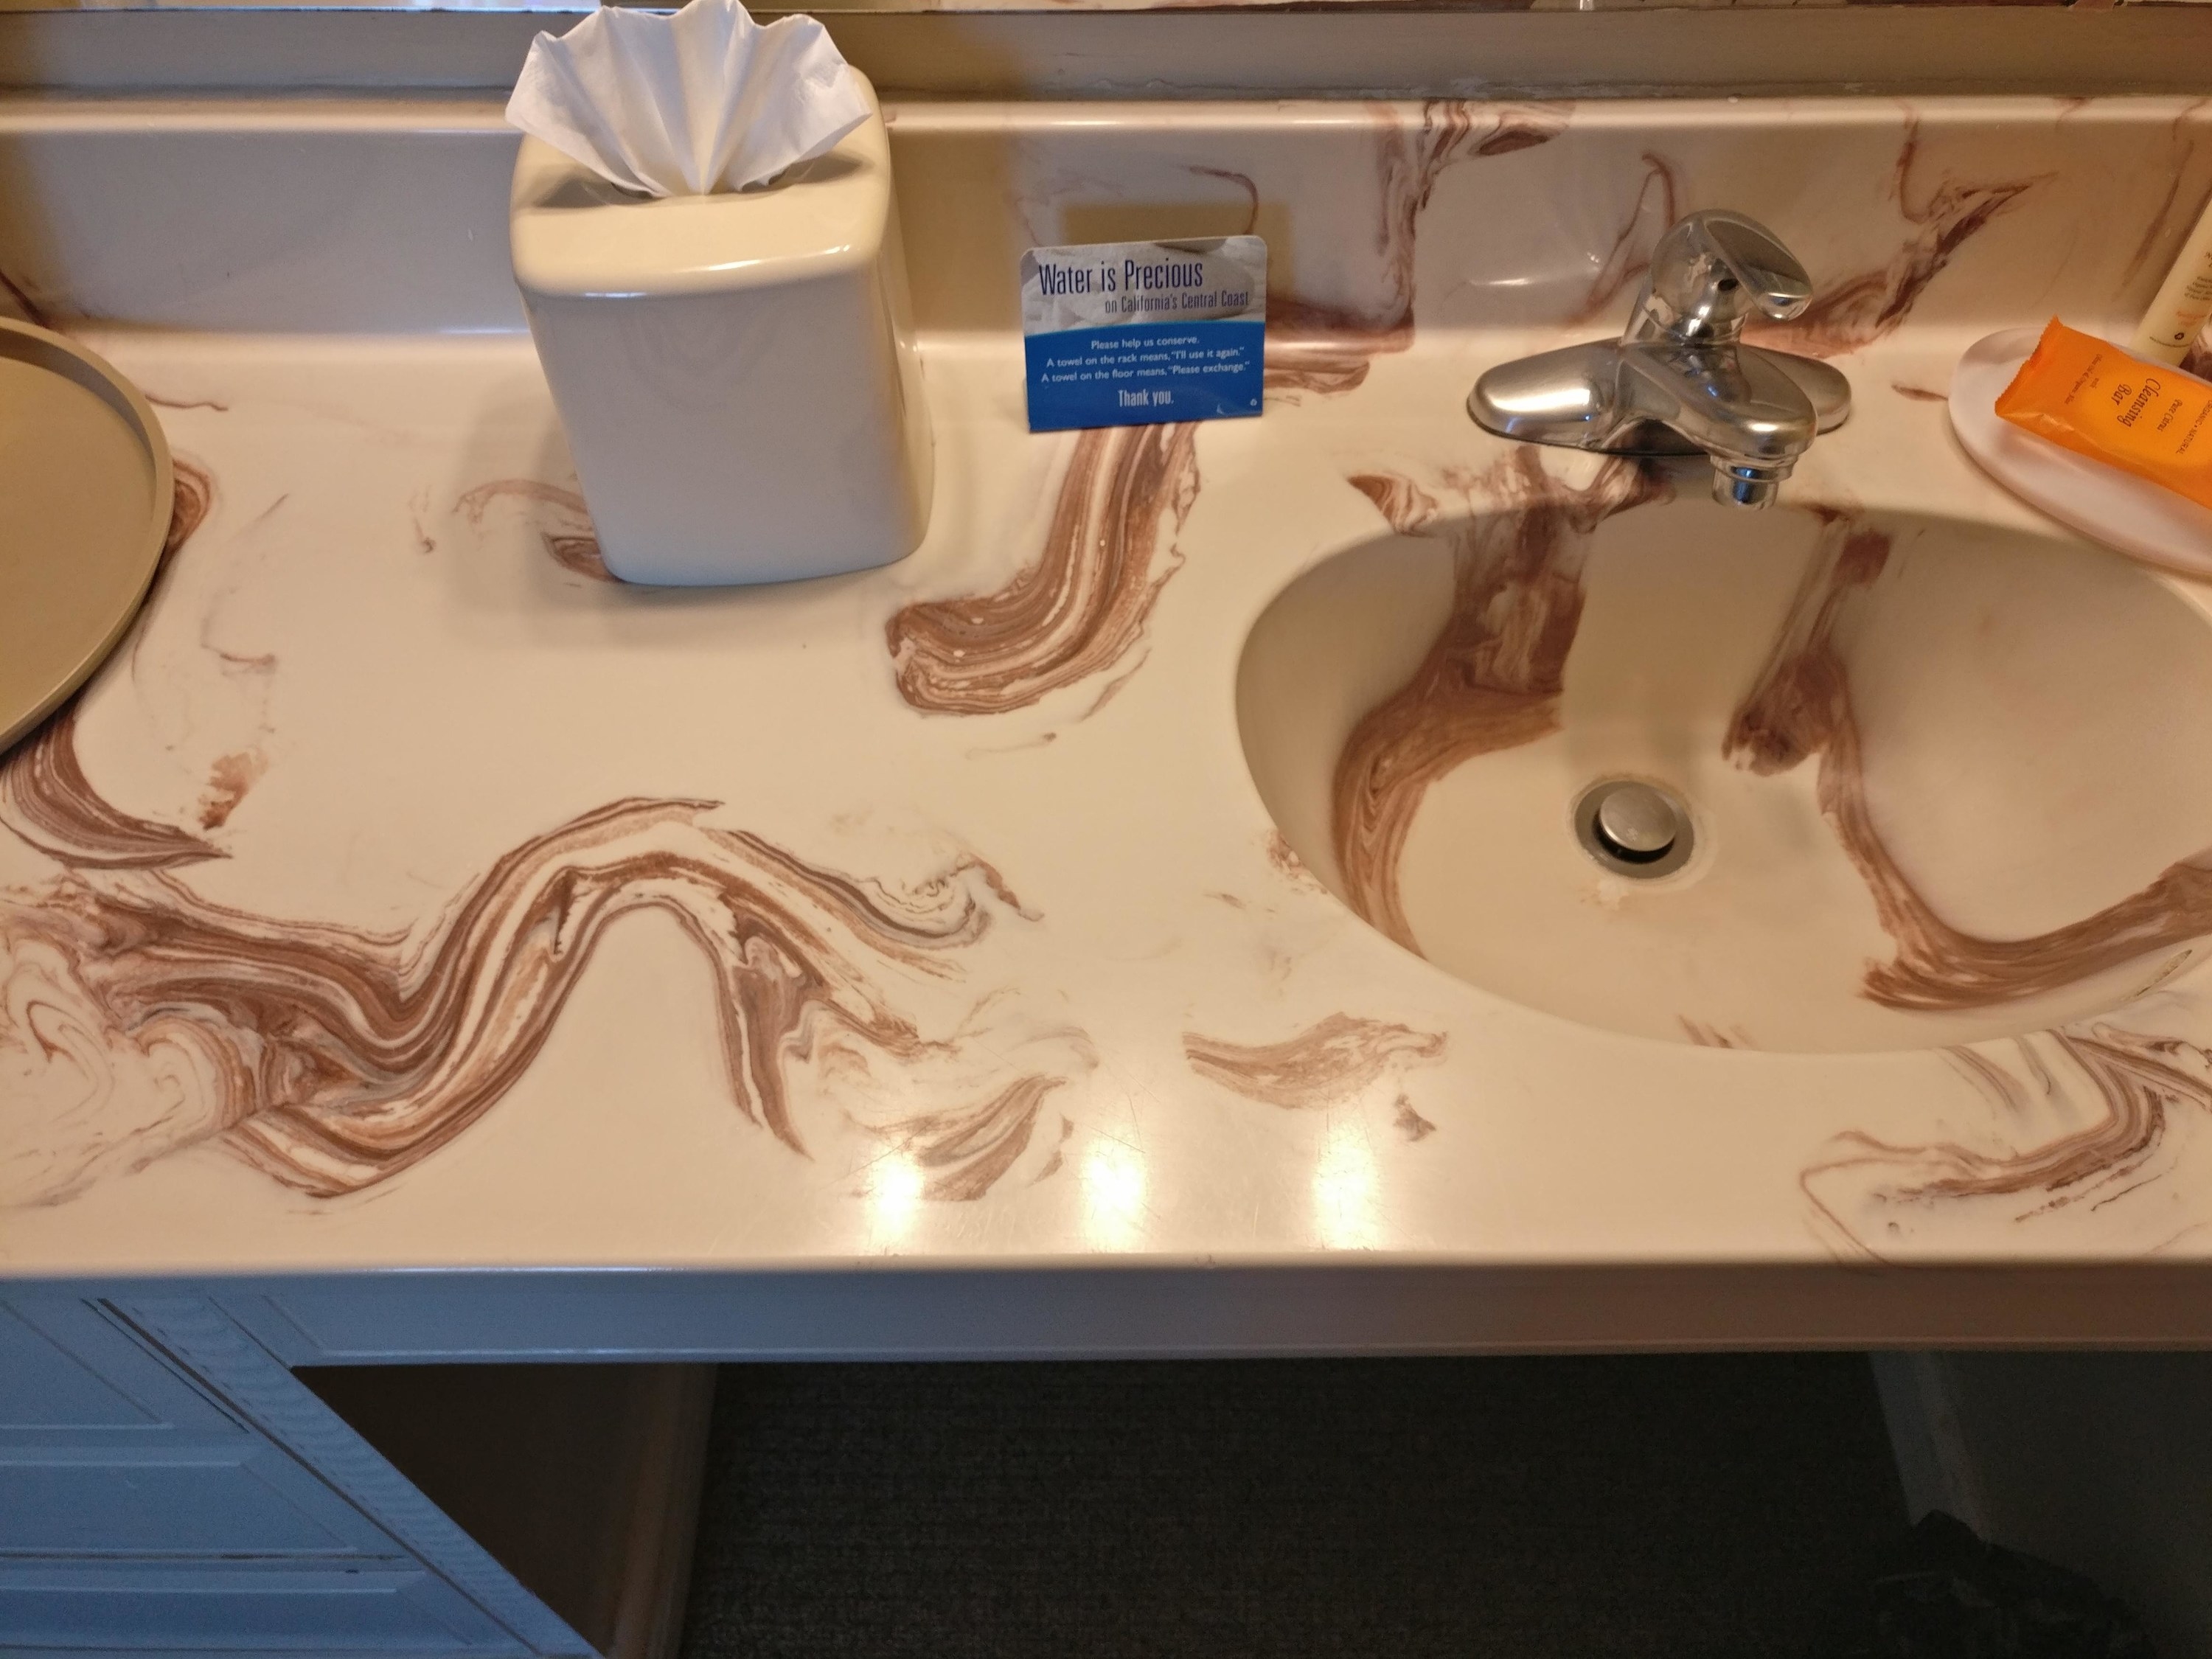 Brown swirl design on sink